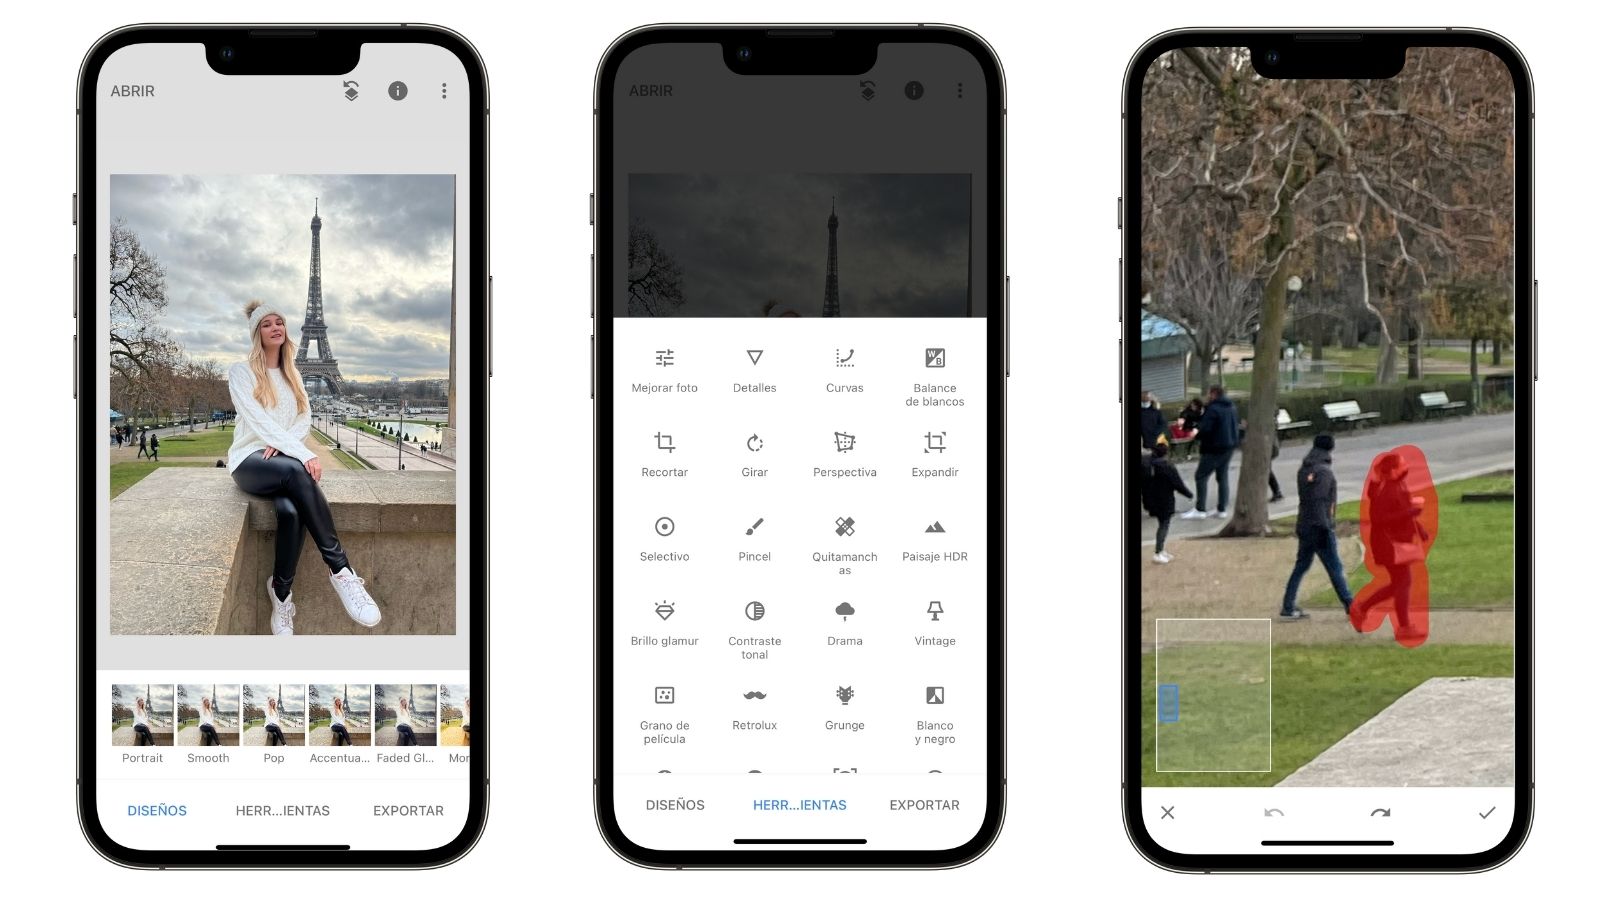 App borrar personas fotos iPhone | Blog K-tuin